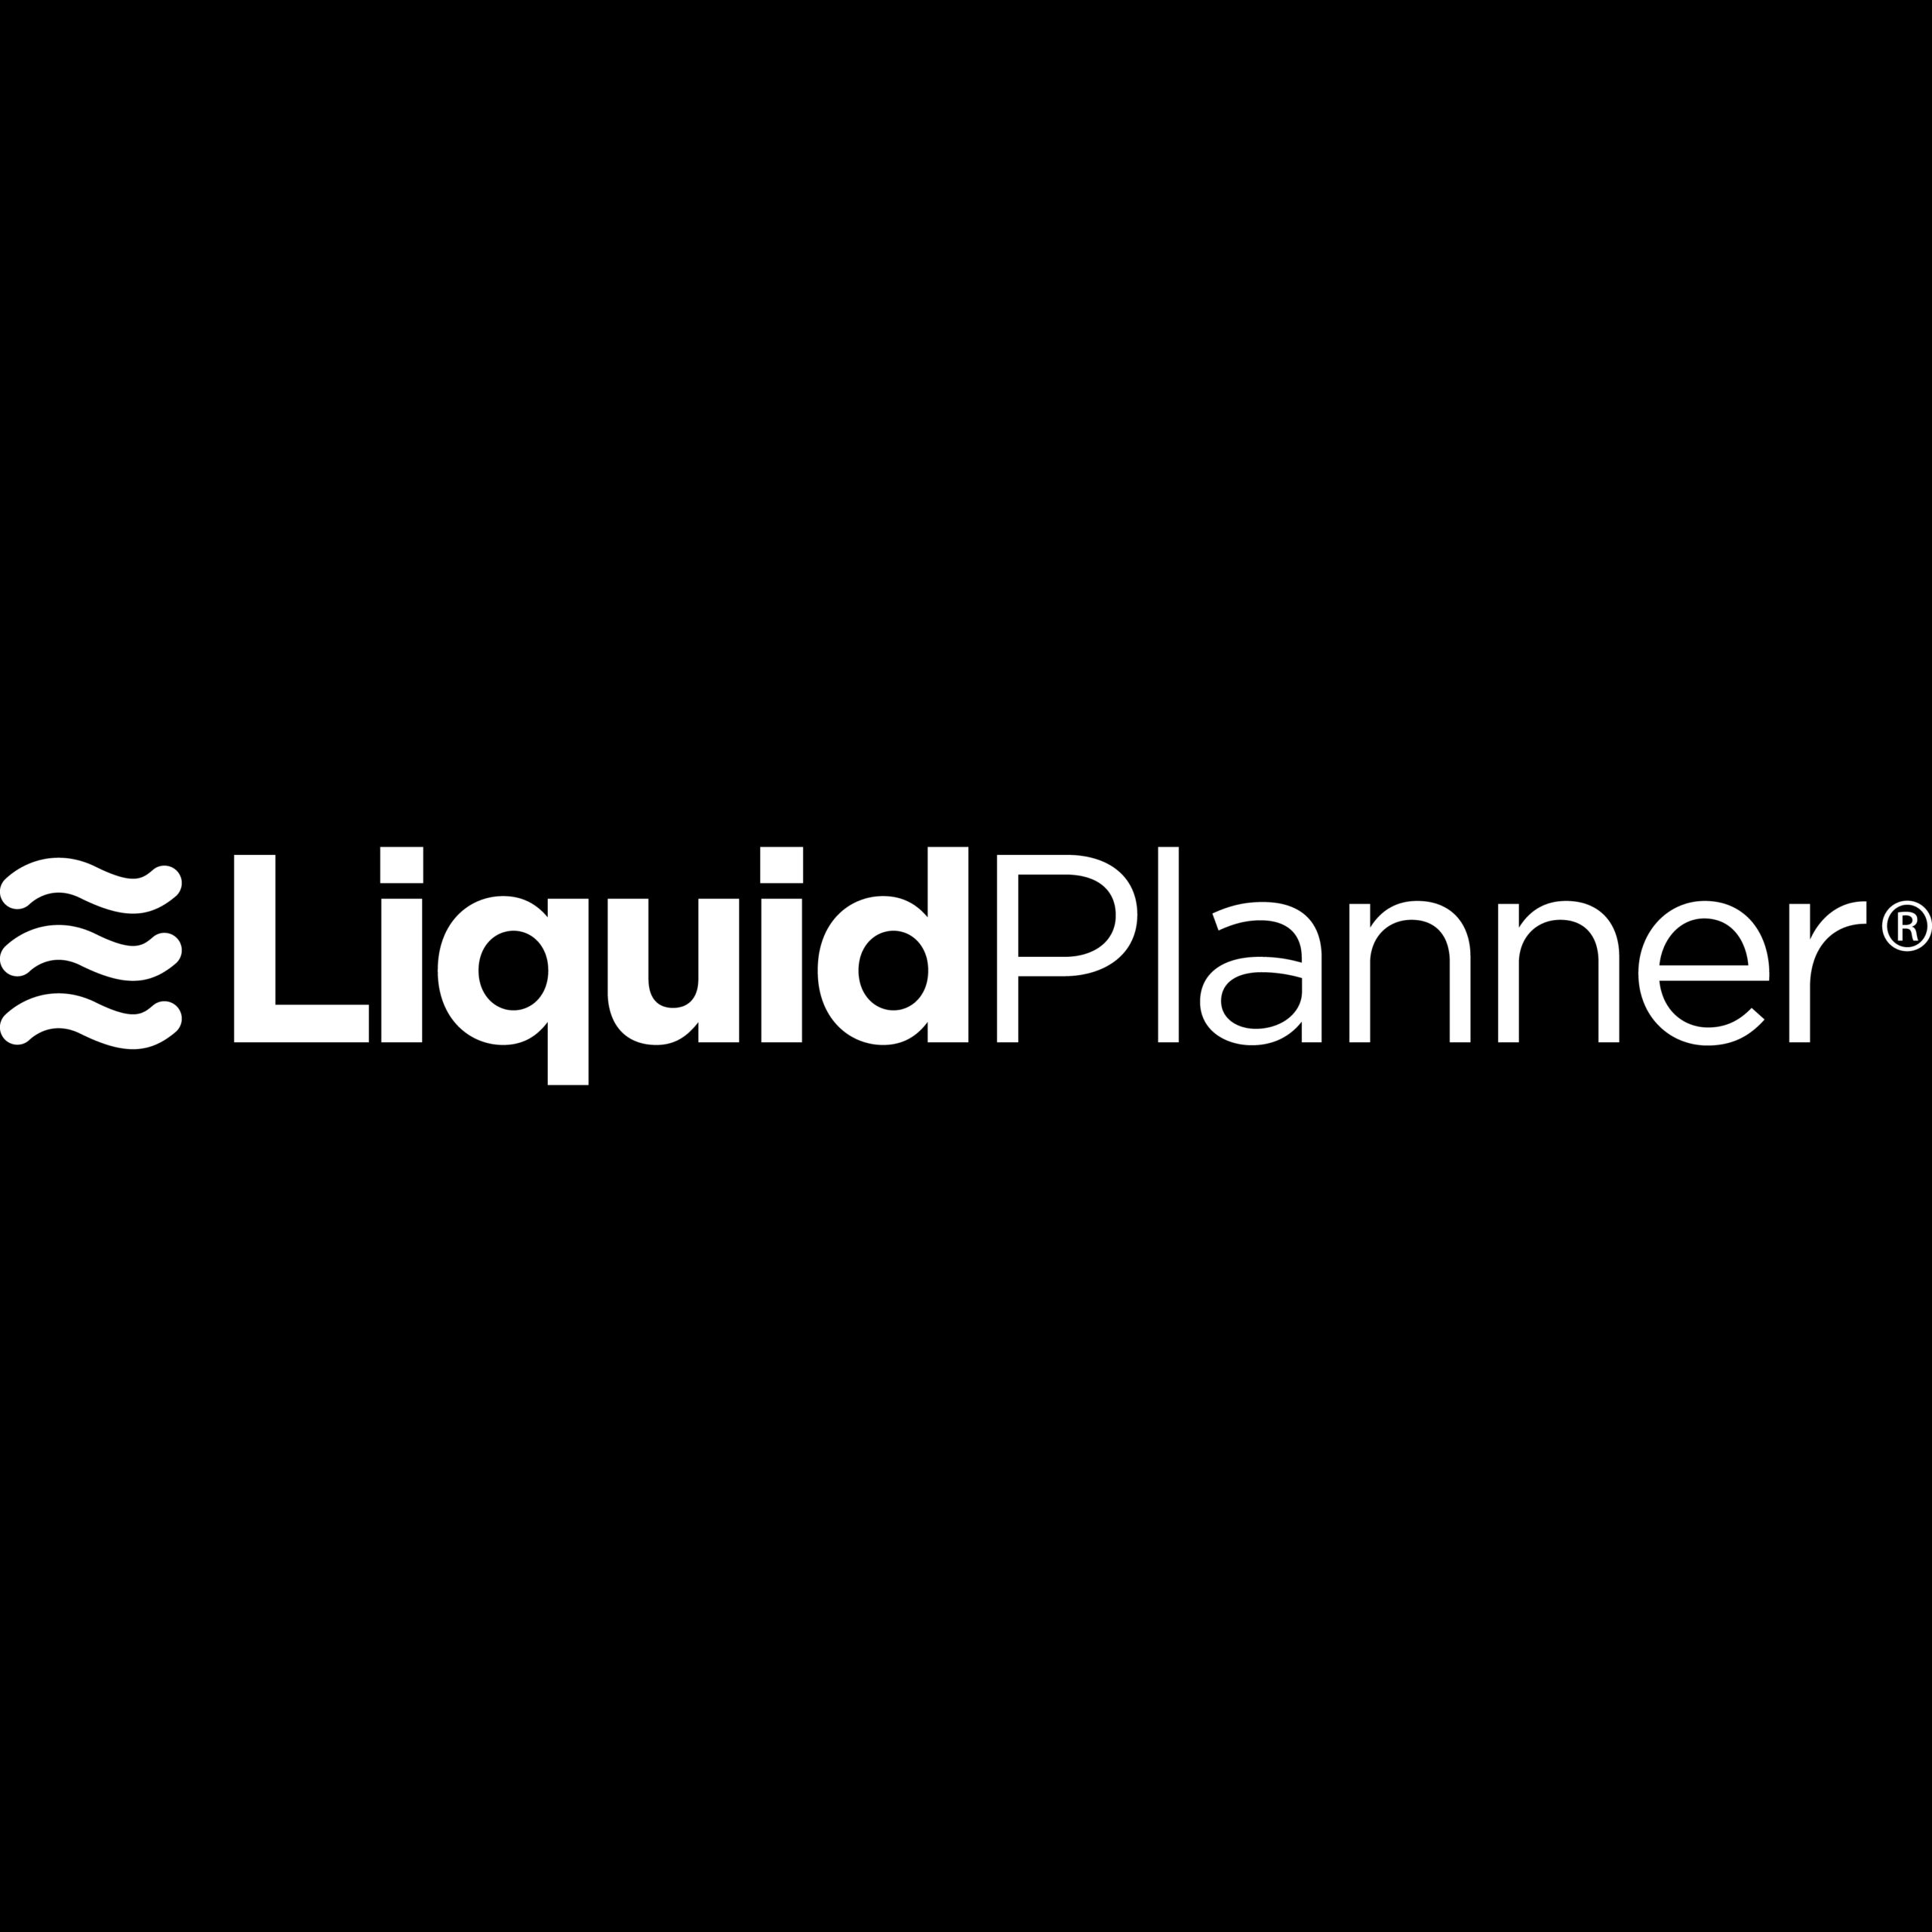 LiquidPlanner-01